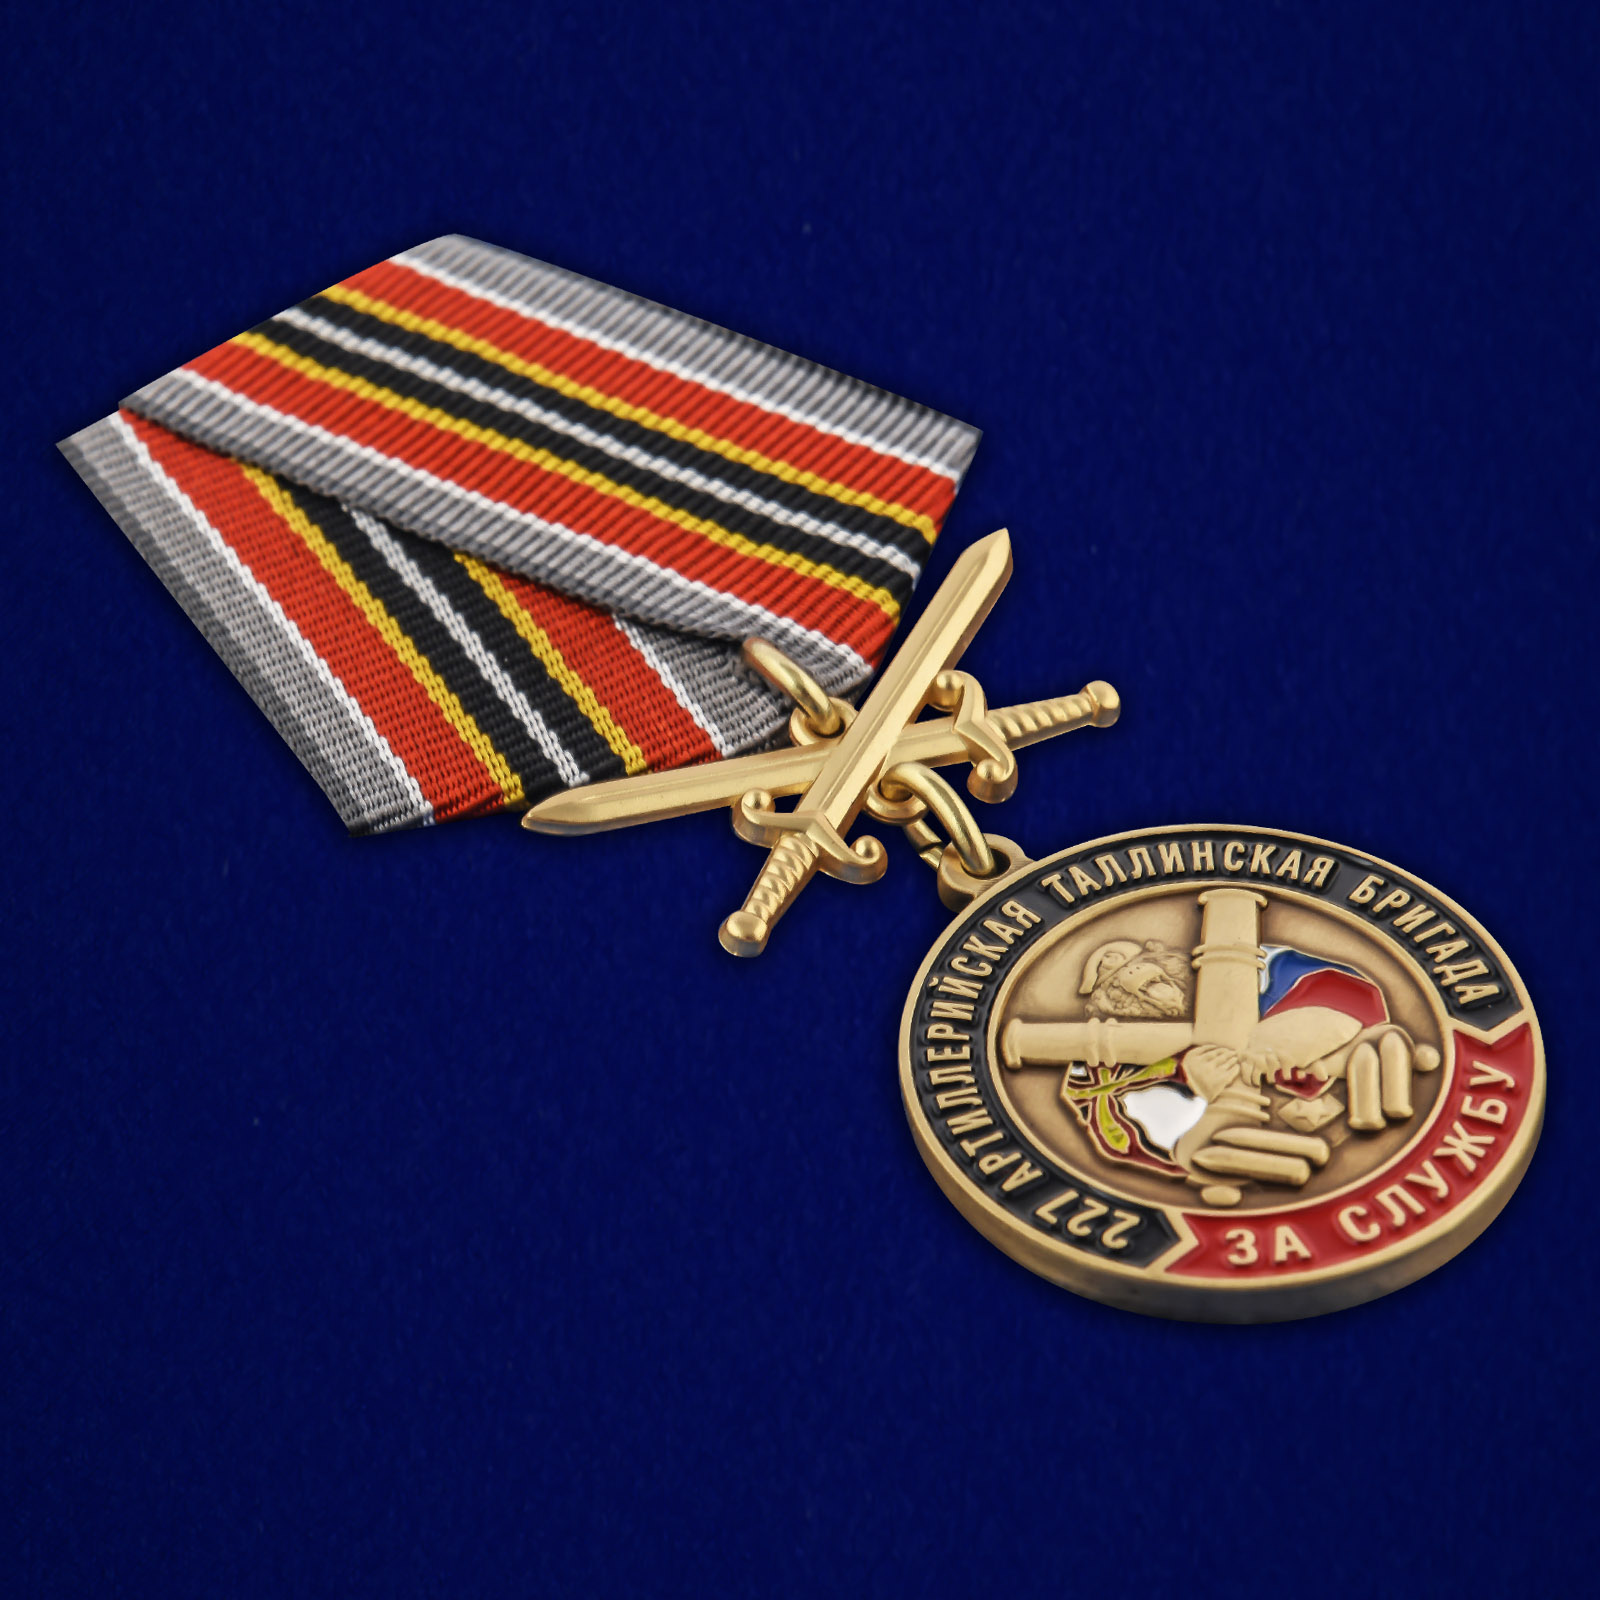 Купить медаль РВиА "За службу в 227-ой артиллерийской бригаде"